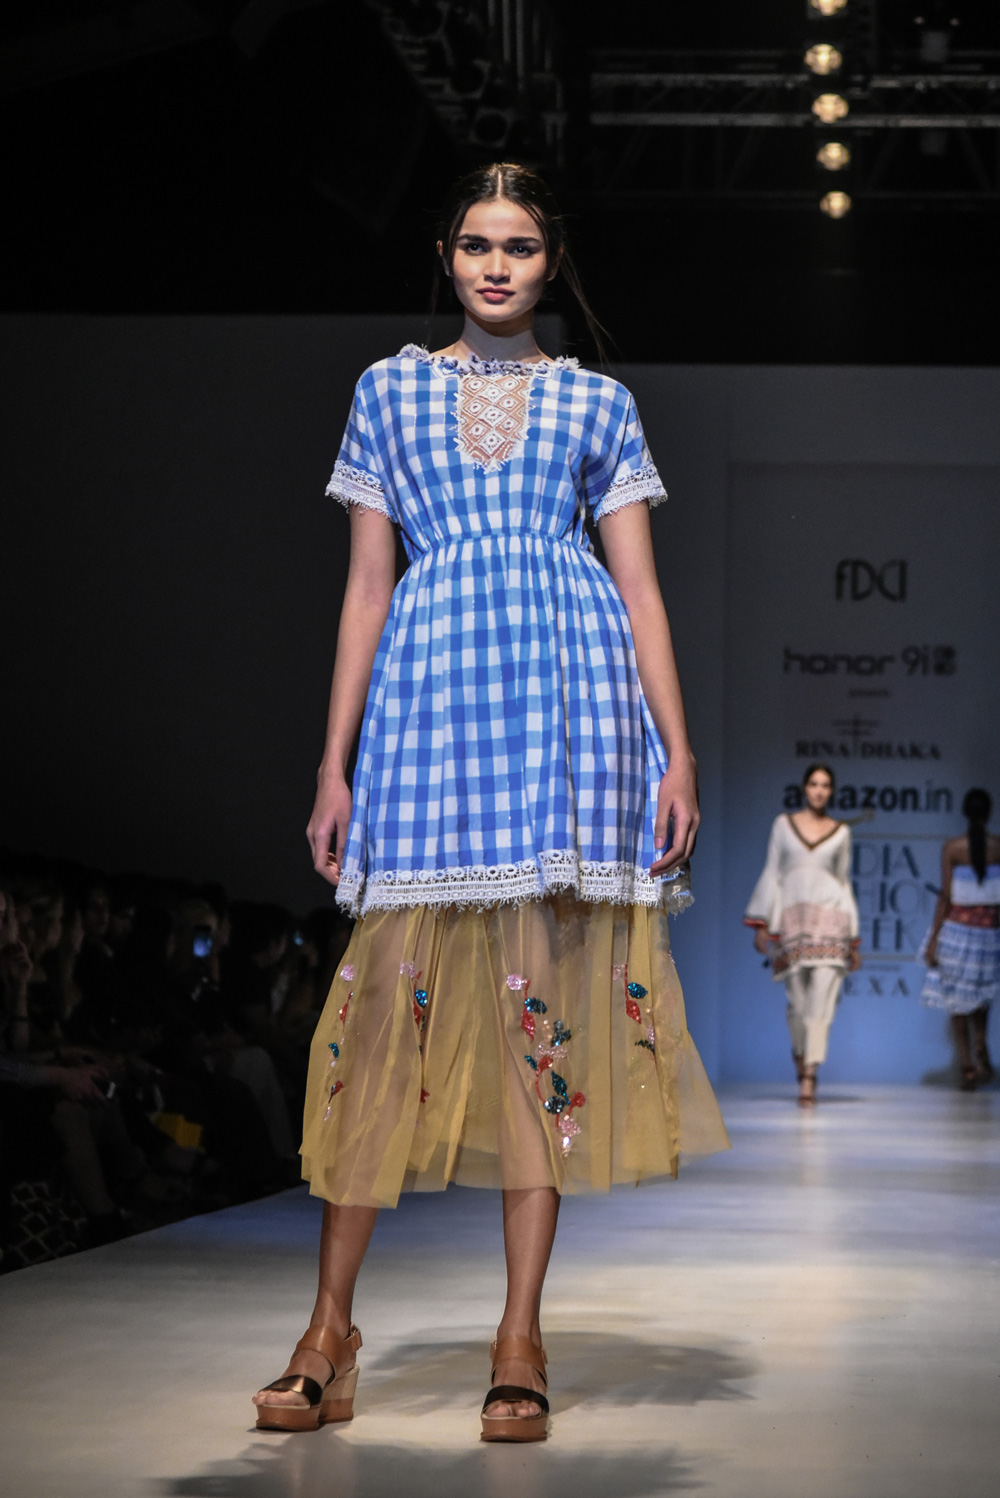 Rina Dhaka FDCI Amazon India Fashion Week Spring Summer 2018 Look 2